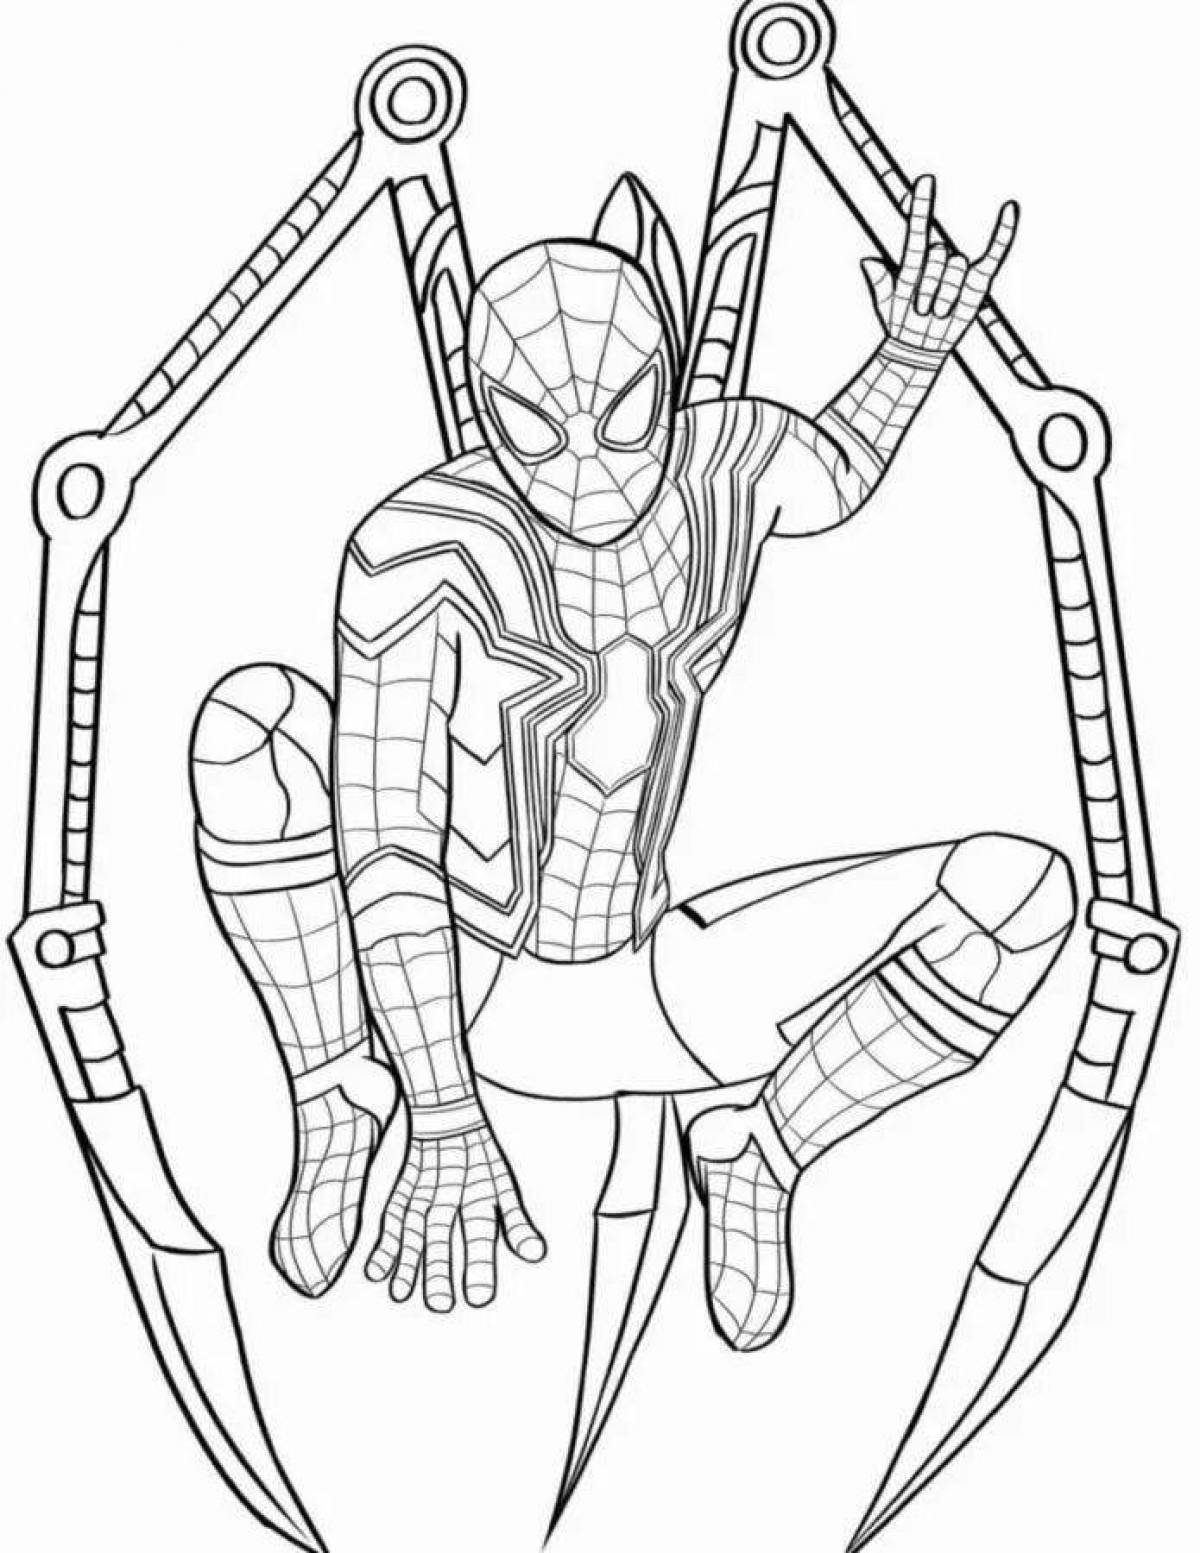 Iron spider #7